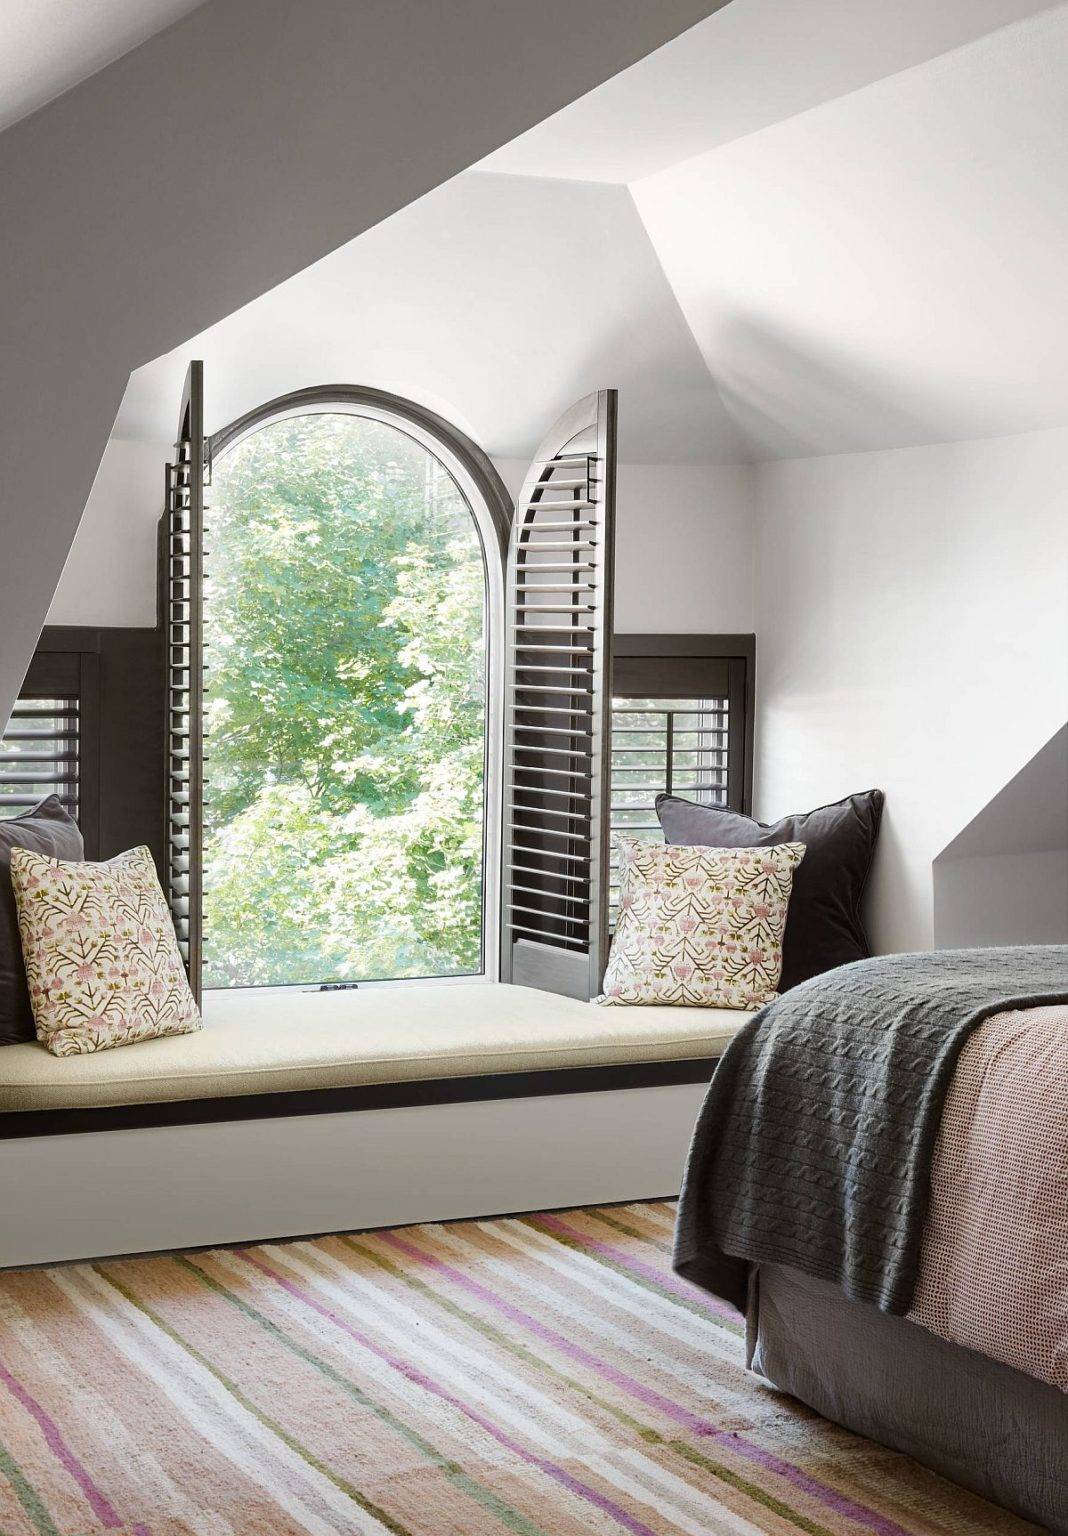 Thiết kế cửa sổ độc đáo khiến chỗ ngồi bên cửa sổ phòng ngủ trở nên đặc biệt hơn.